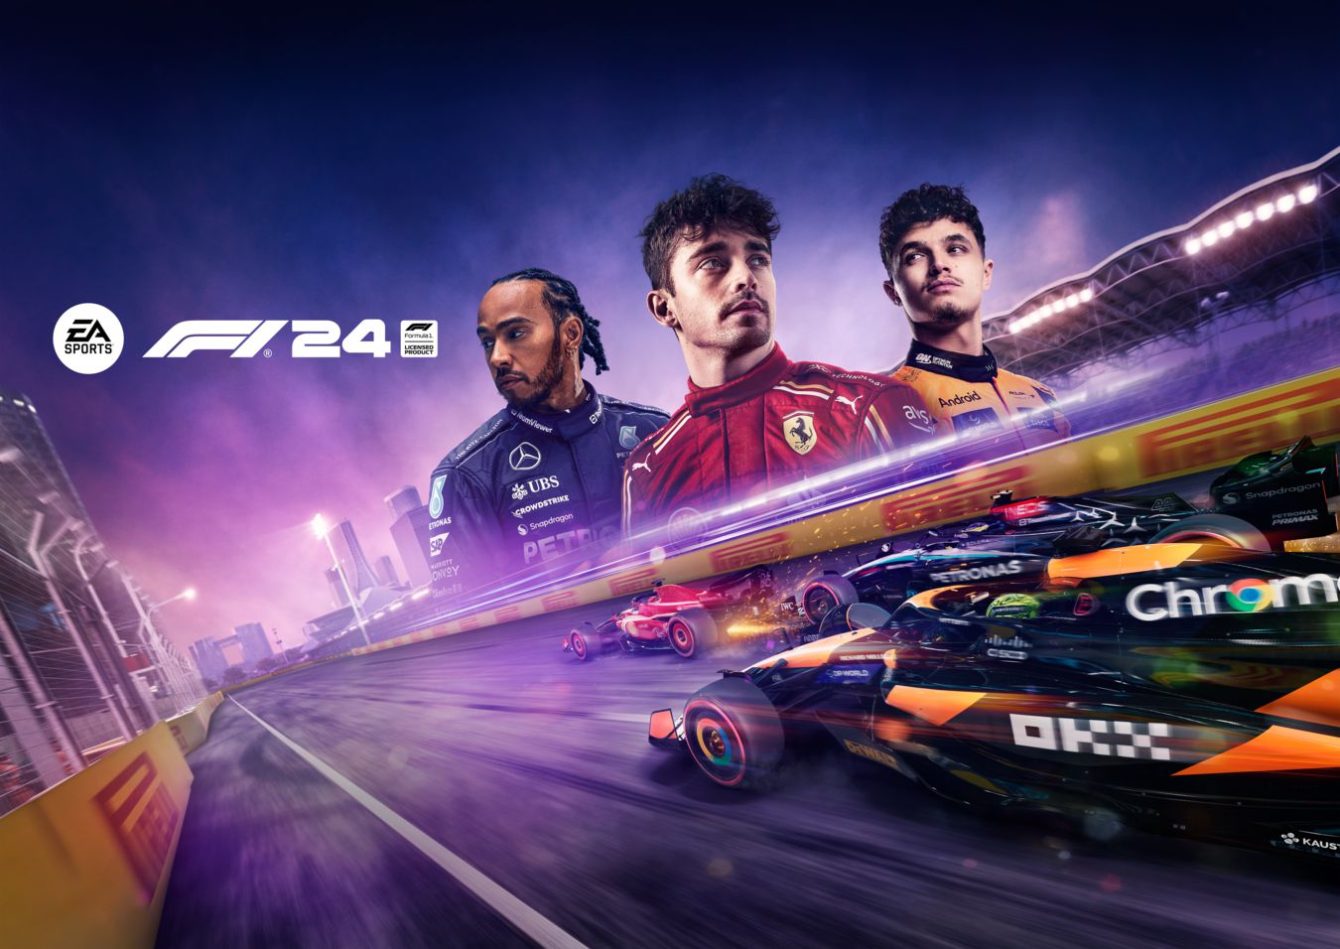 F1 24: rivelati i piloti che saranno sulla copertina del gioco!